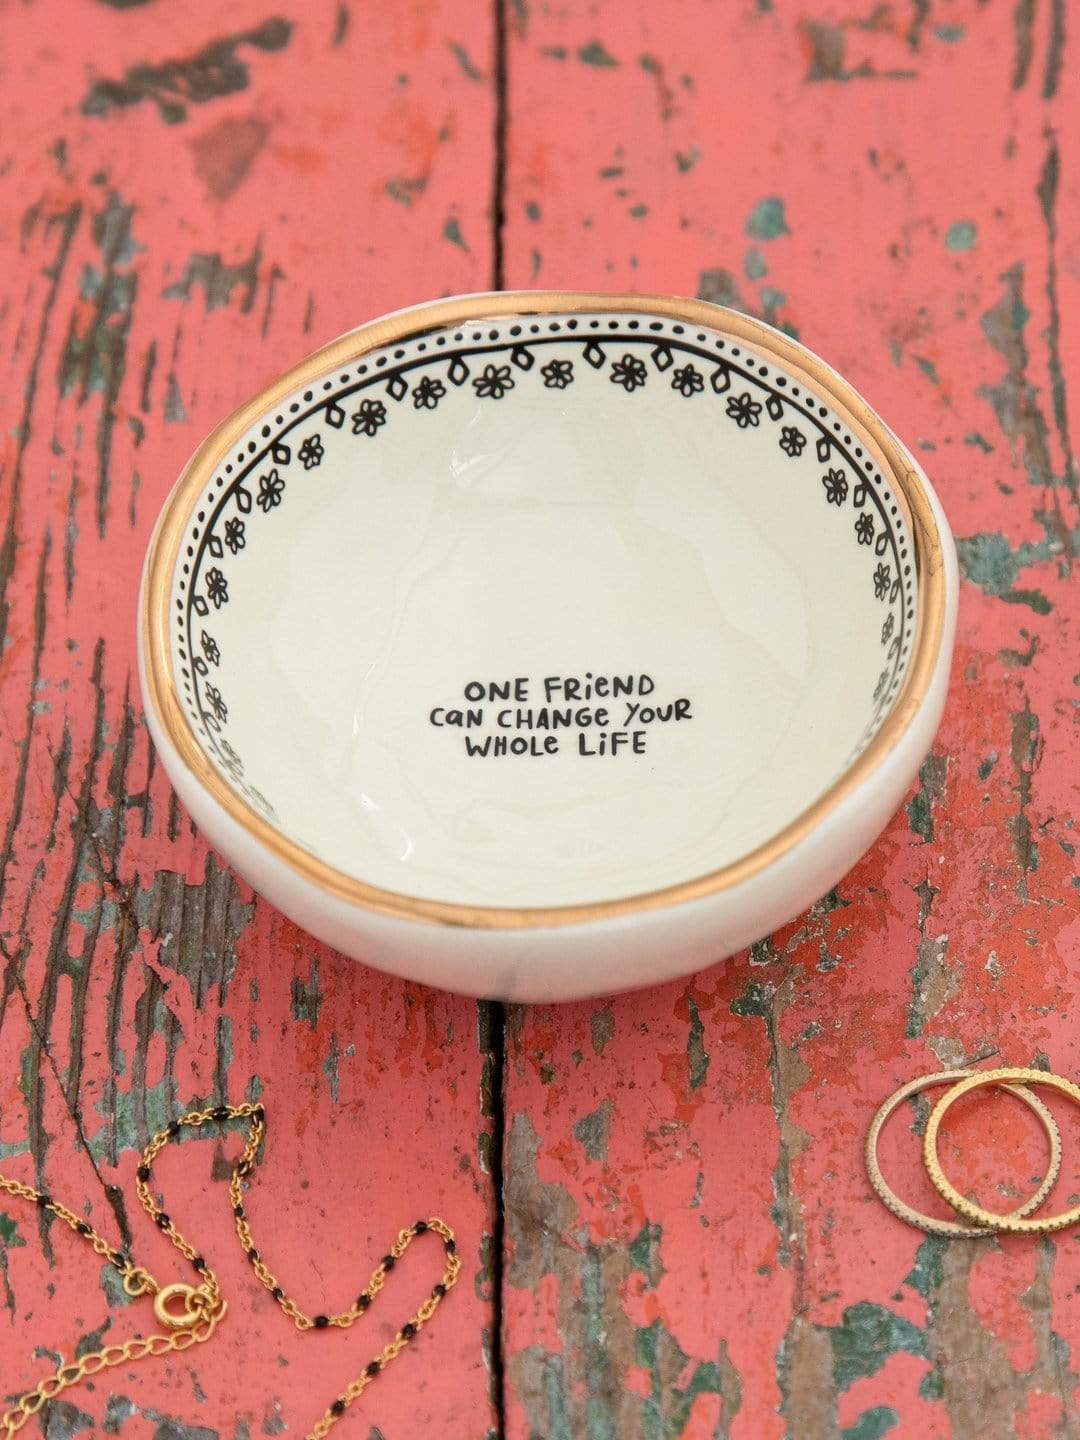 Antiqued Trinket Bowl Sister – pjchilcottage